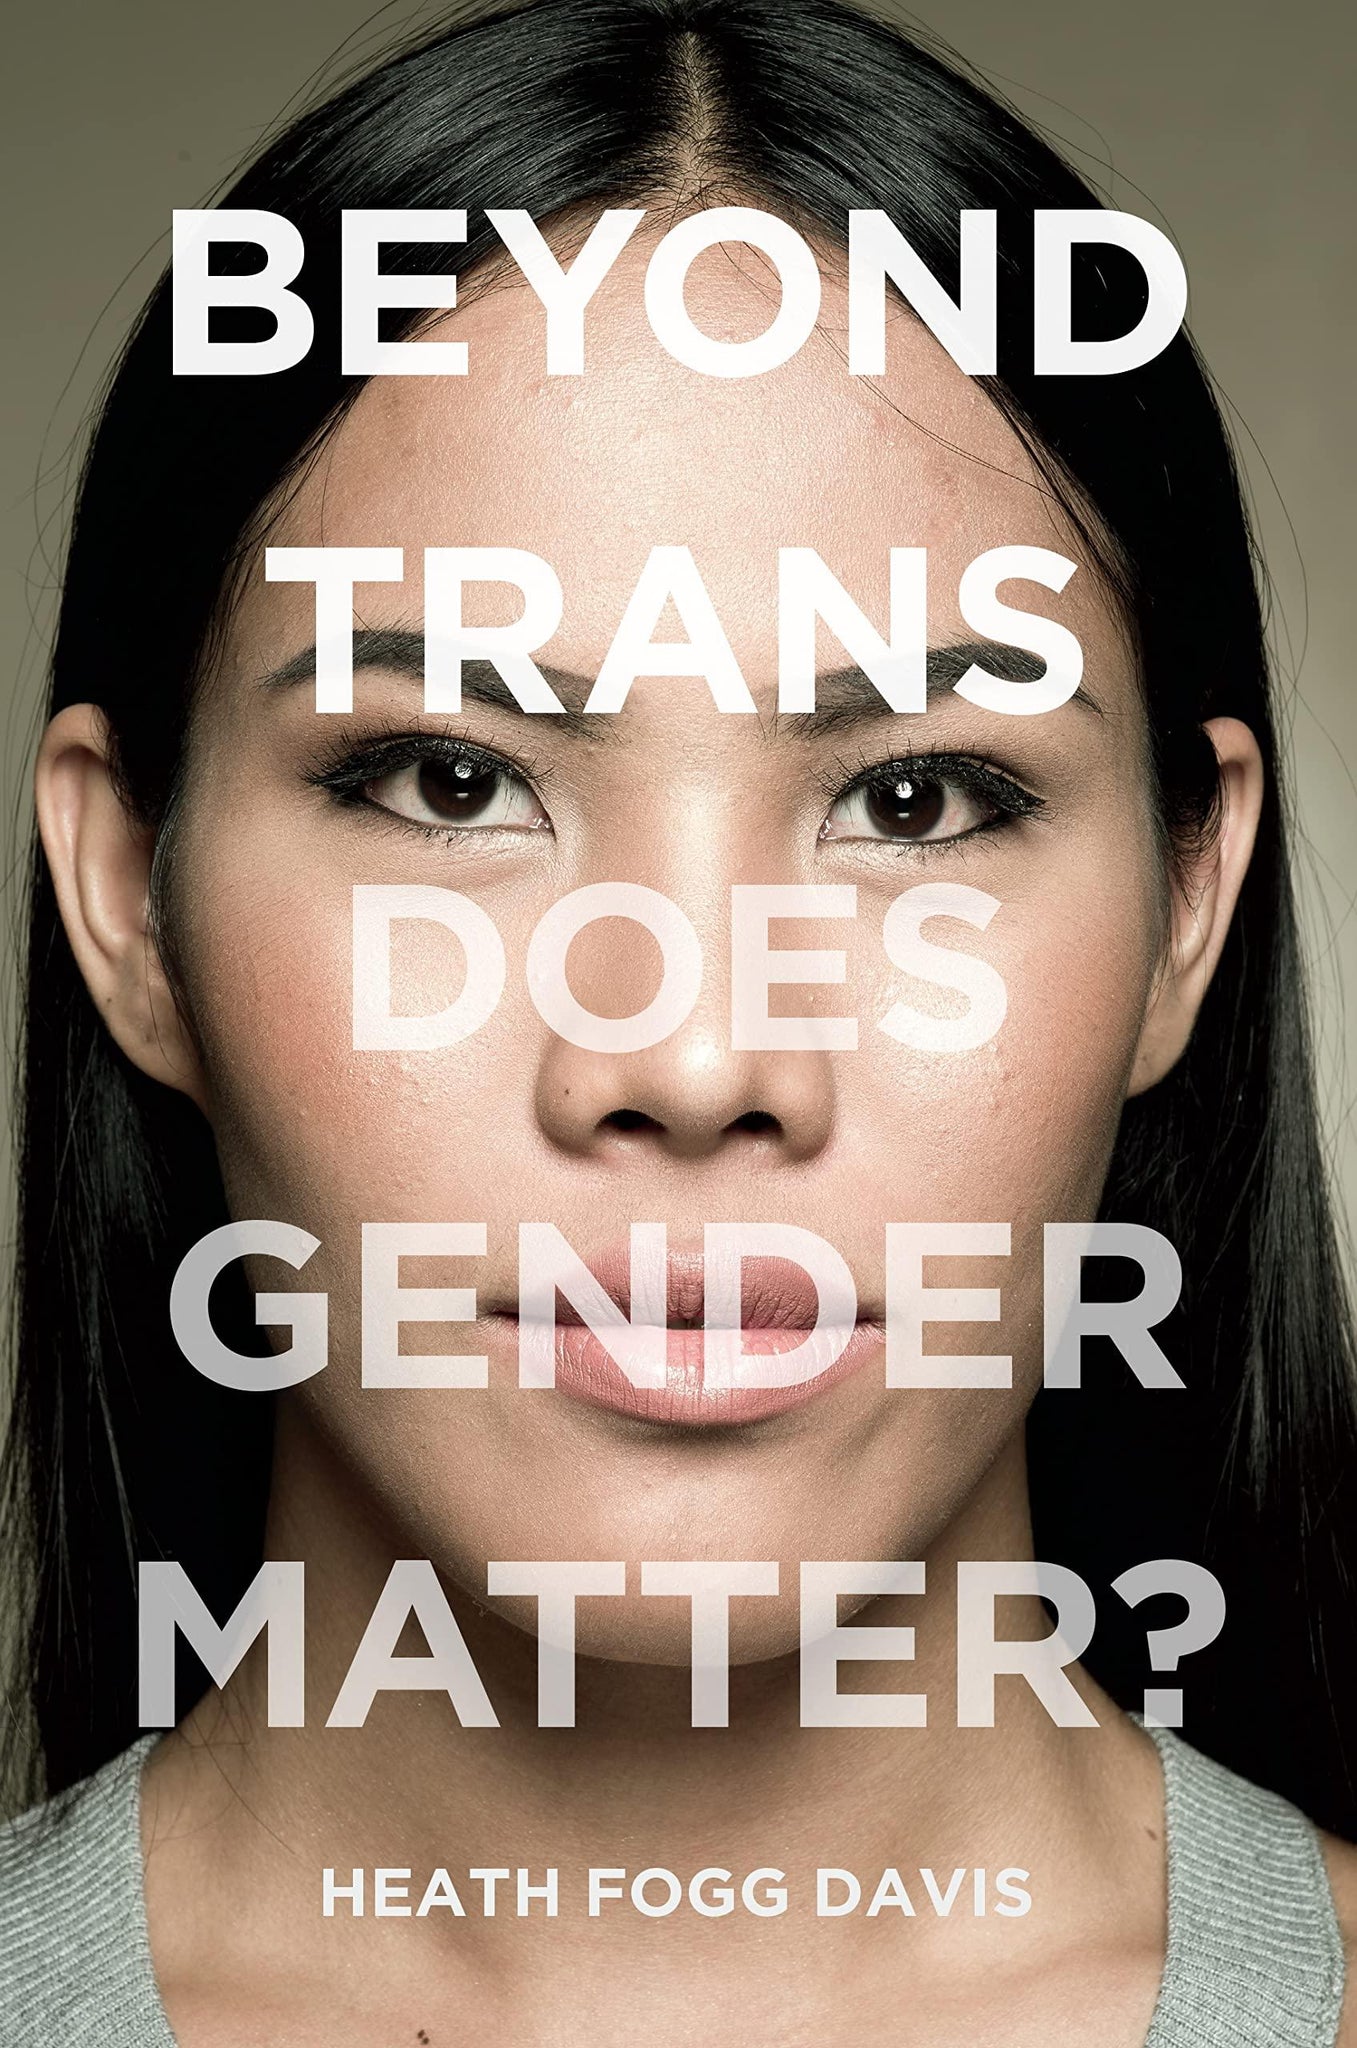 Beyond Trans: Does Gender Matter? - ShopQueer.co